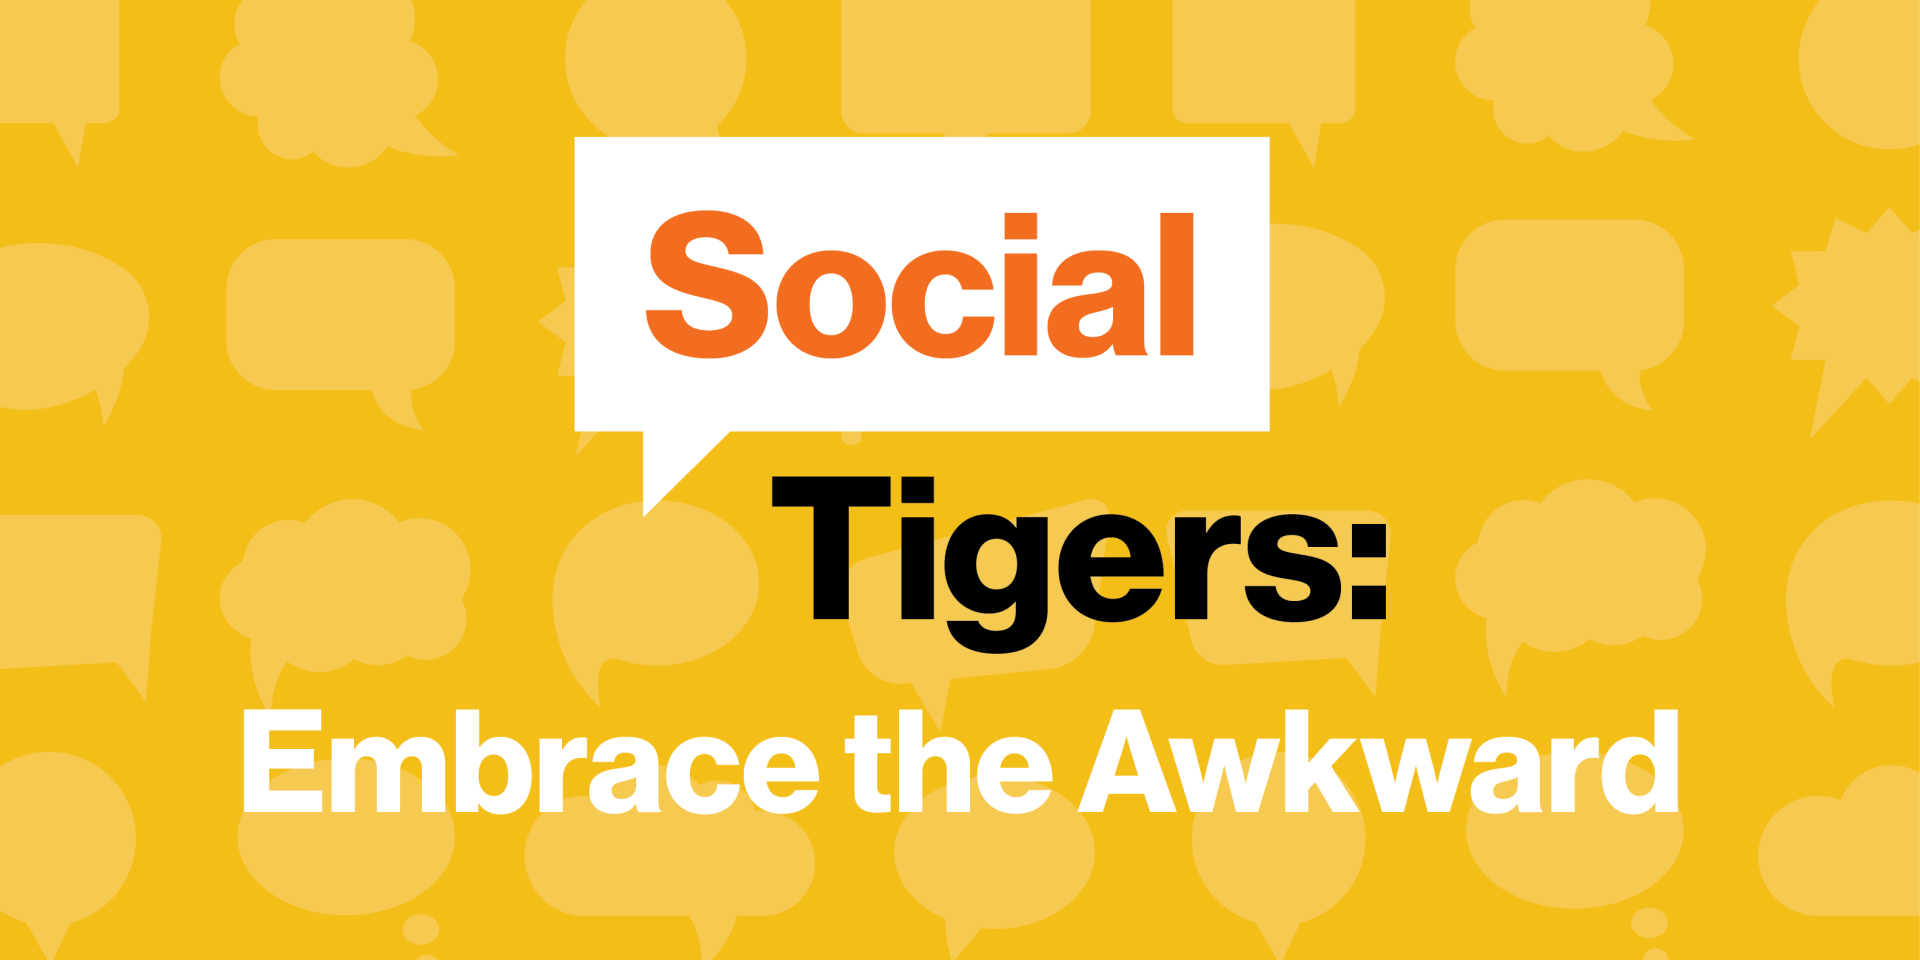 Social Tigers